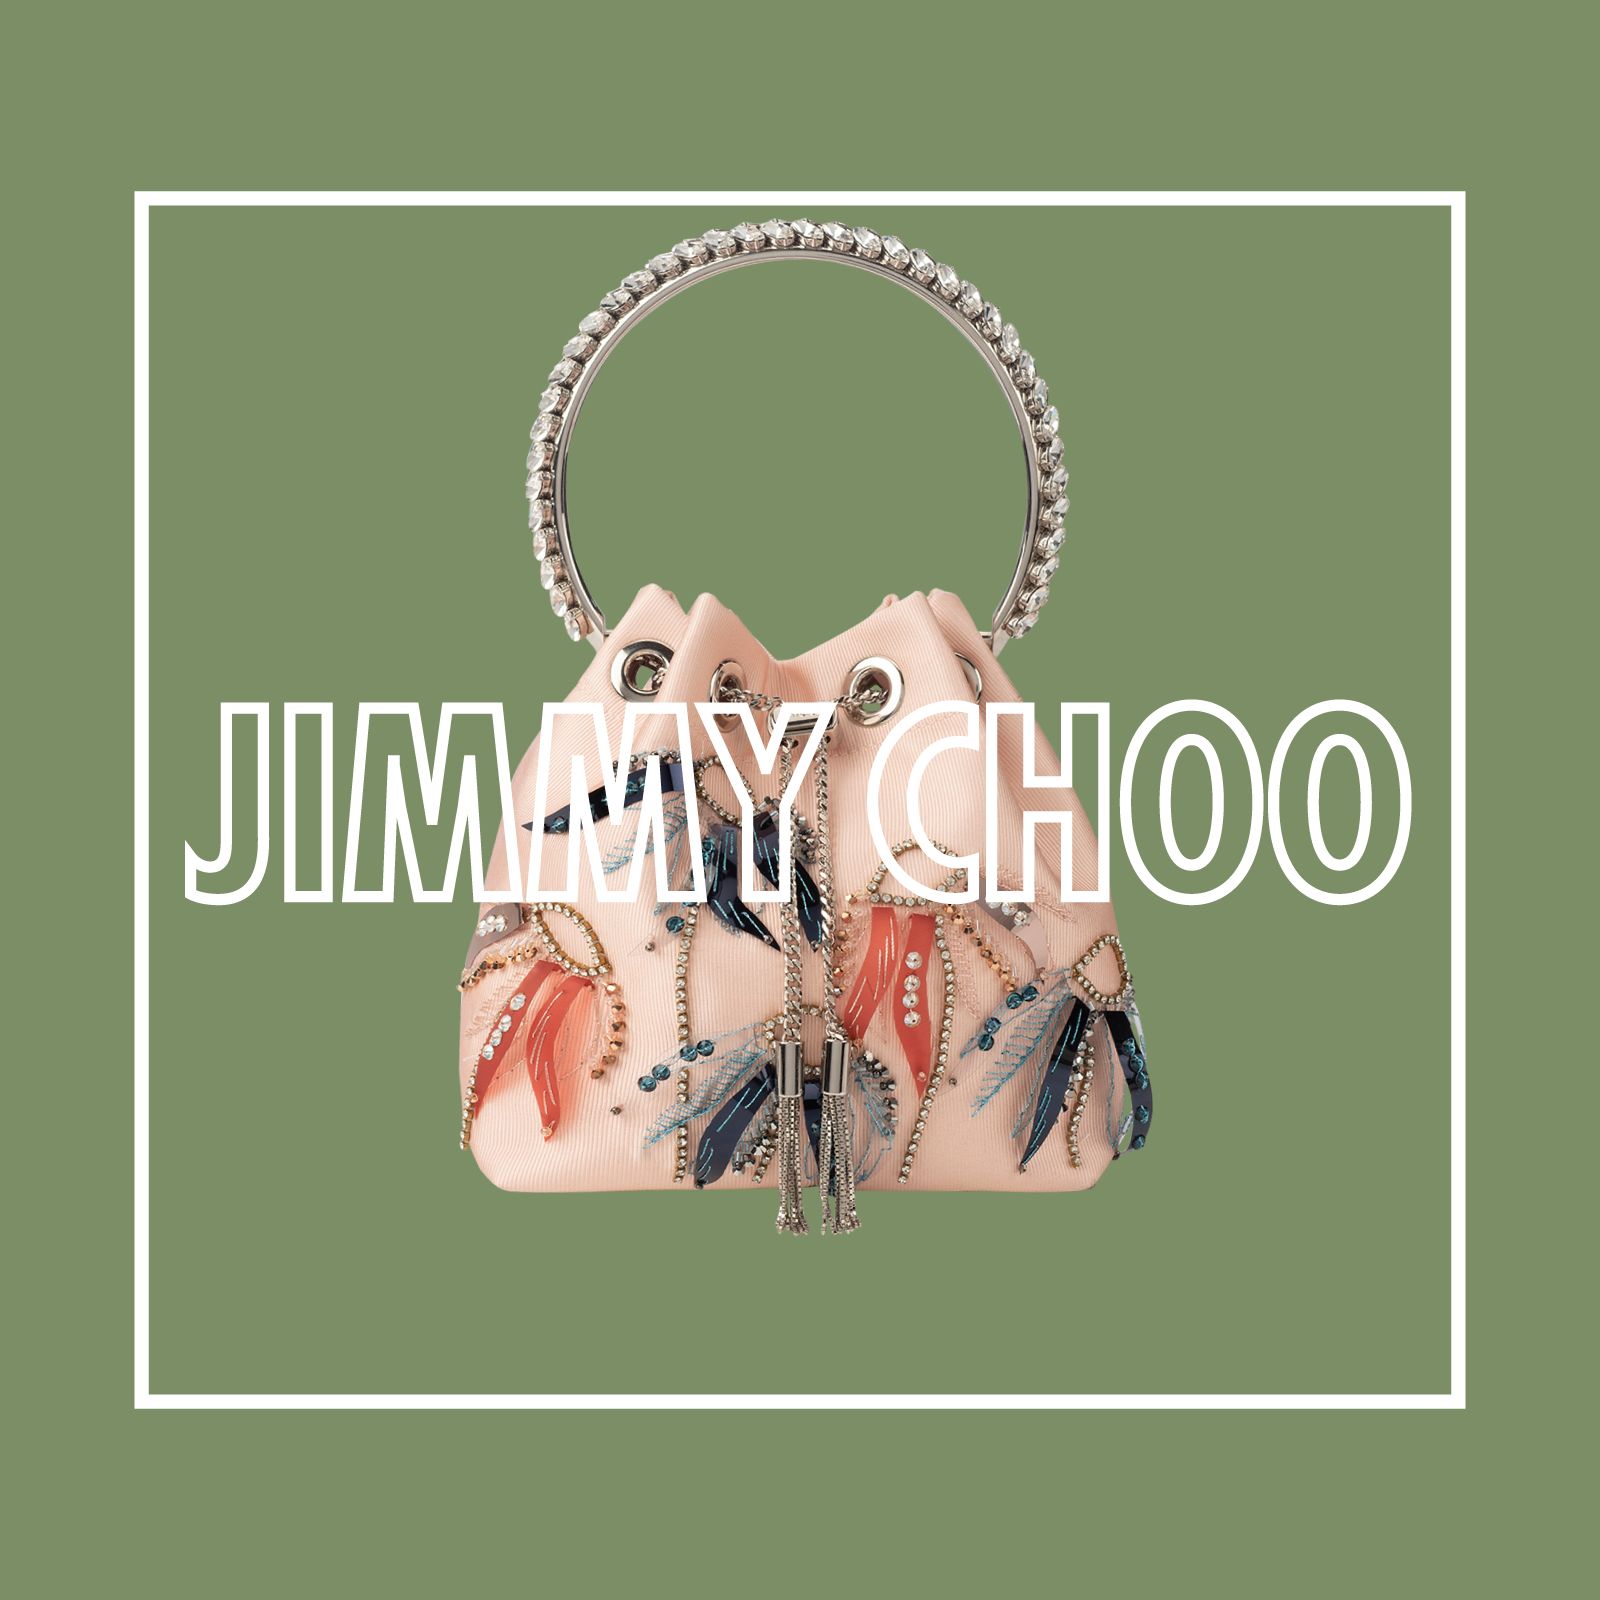 ジミー チュウ（JIMMY CHOO）新作バッグ【2020秋冬】